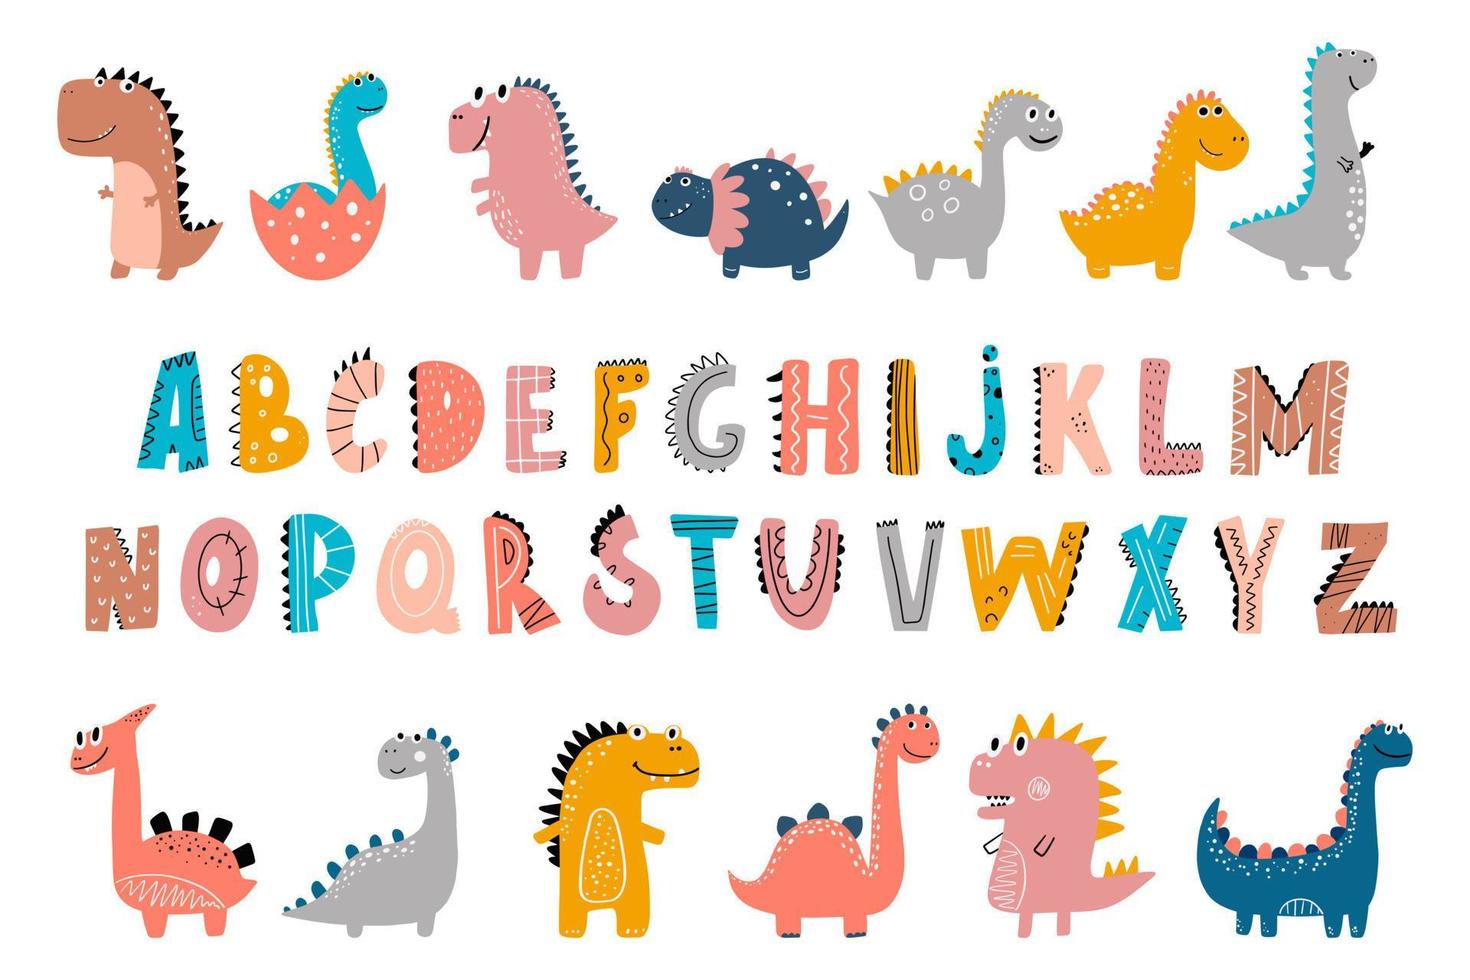 niedliche dinosaurier ist eine sammlung bunter dinosaurier und süßer abc-alphabetelemente. Das Set enthält niedliche Charakter-Cliparts, die alle in einer hübschen Farbpalette erstellt wurden. vektor